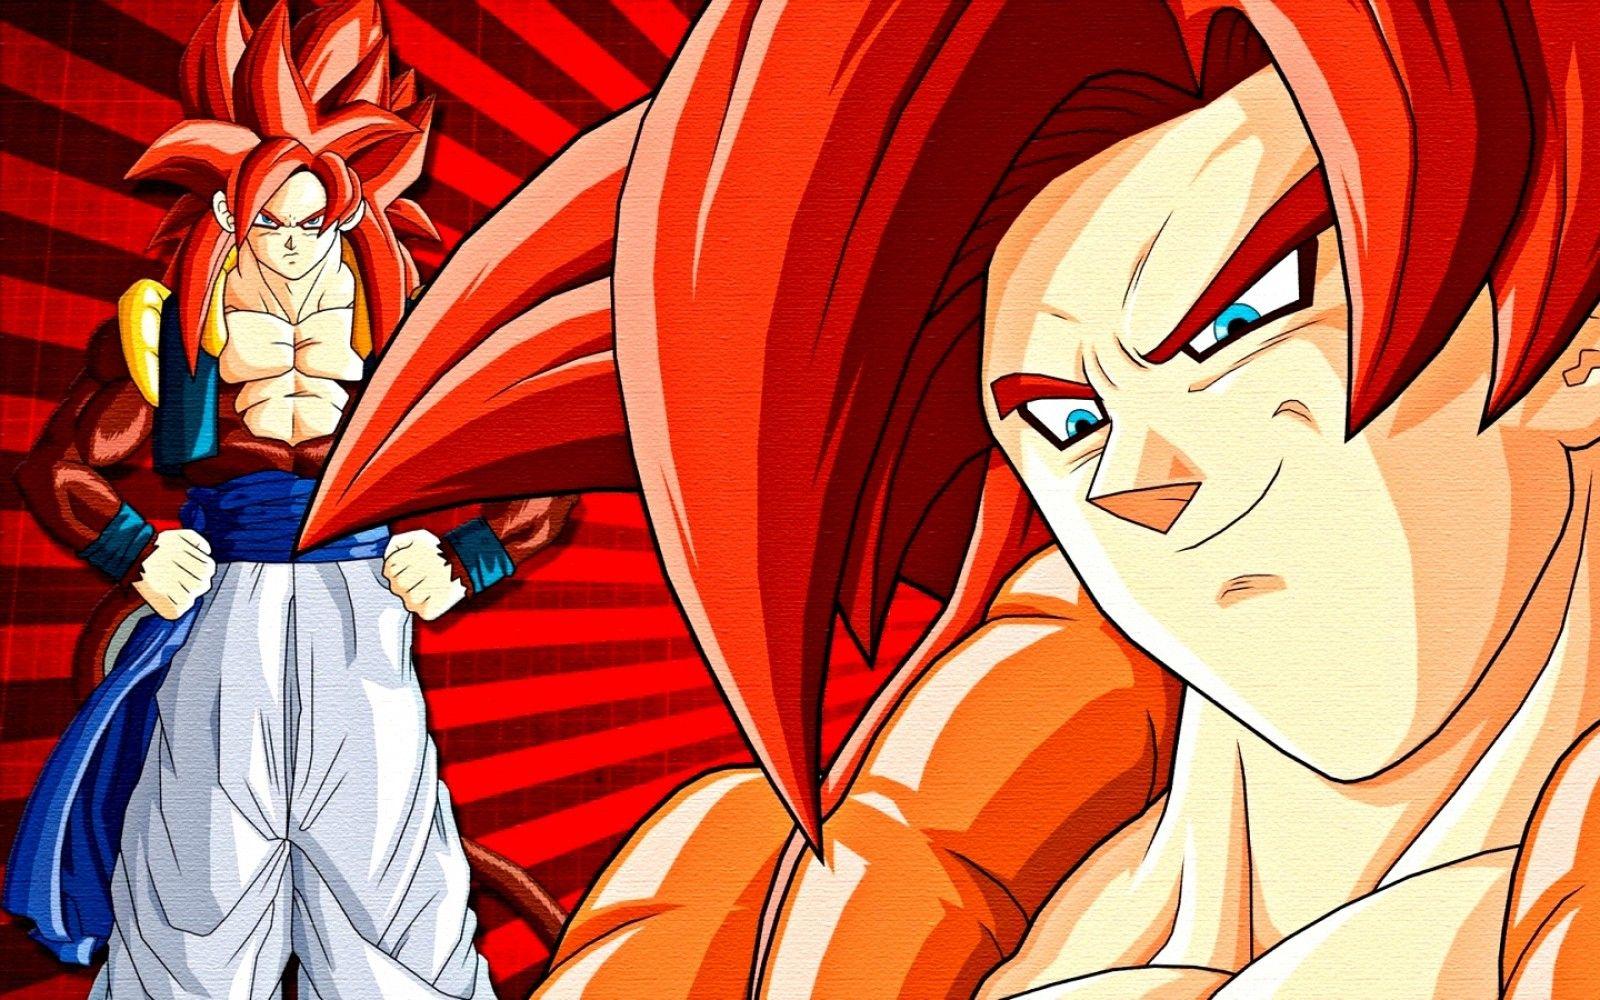 Goku SSJ4 Wallpapers - Top Free Goku SSJ4 Backgrounds ...